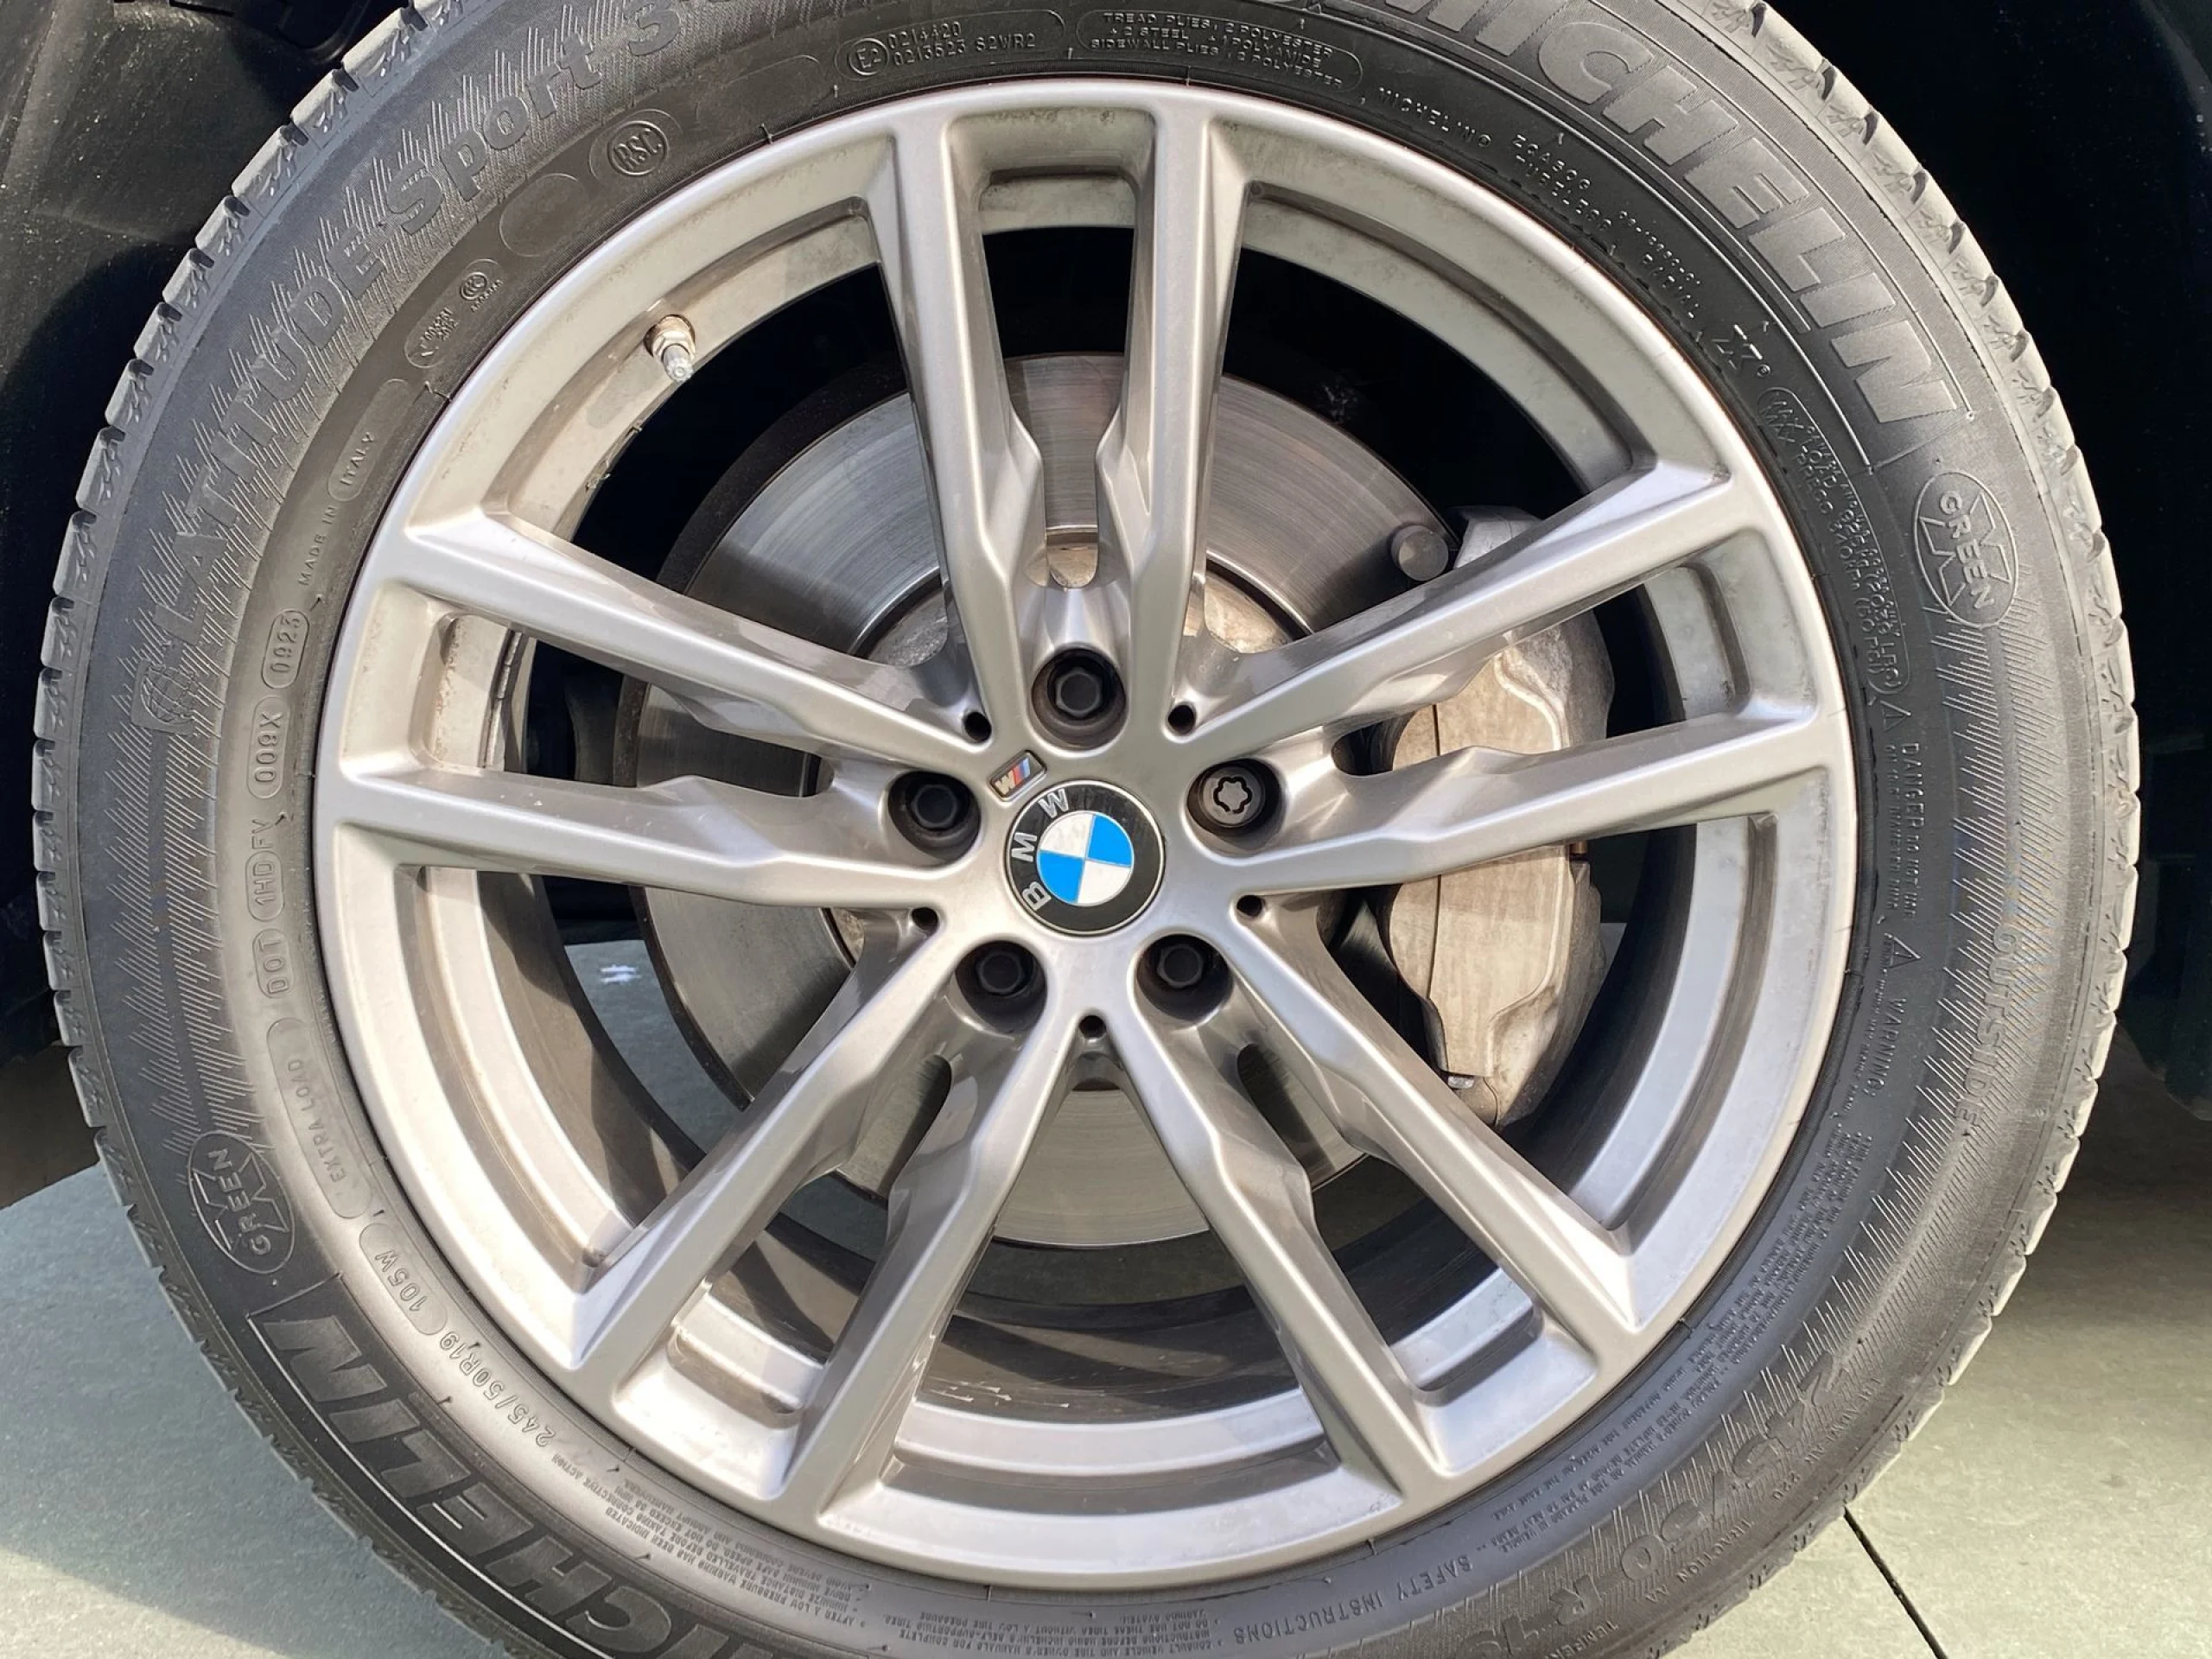 BMW X3 xDrive25d 170 kW (231 CV) - Foto 7